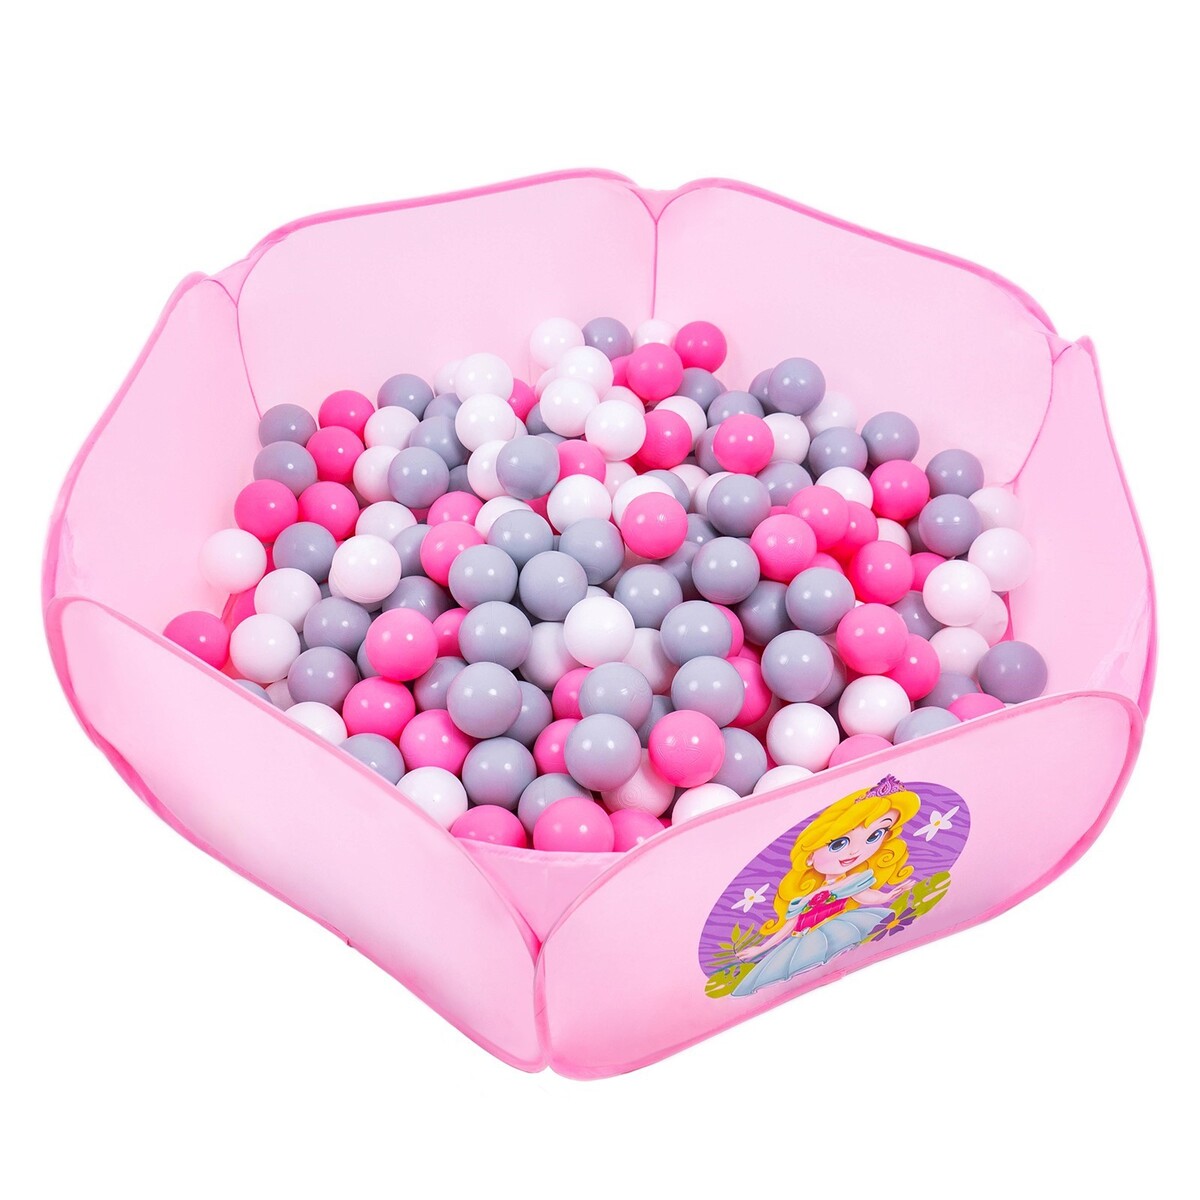 Шарики для сухого бассейна с рисунком, диаметр шара 7,5 см, набор 150 штук, цвет розовый, белый, серый шарики для сухого бассейна соломон диаметр 5 см 150 шт